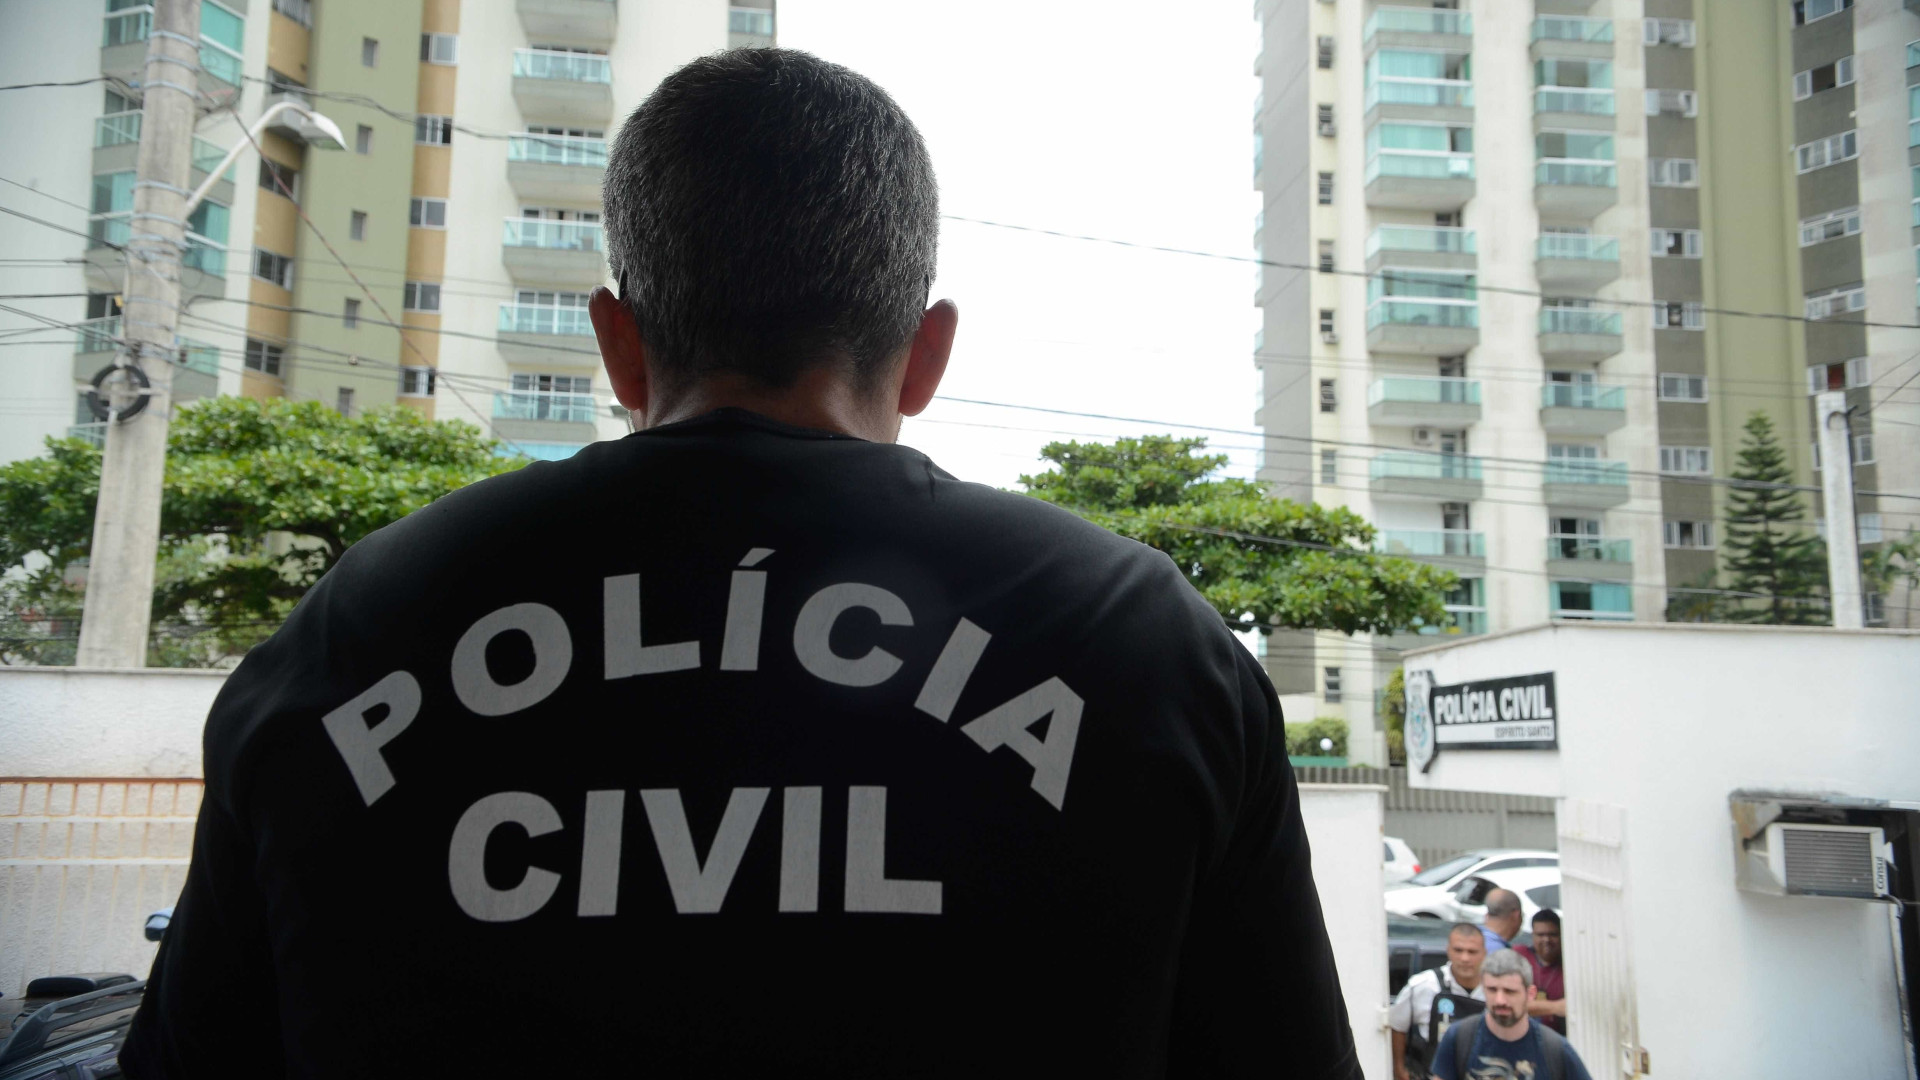 Policiais civis terminam greve no Rio Grande do Norte